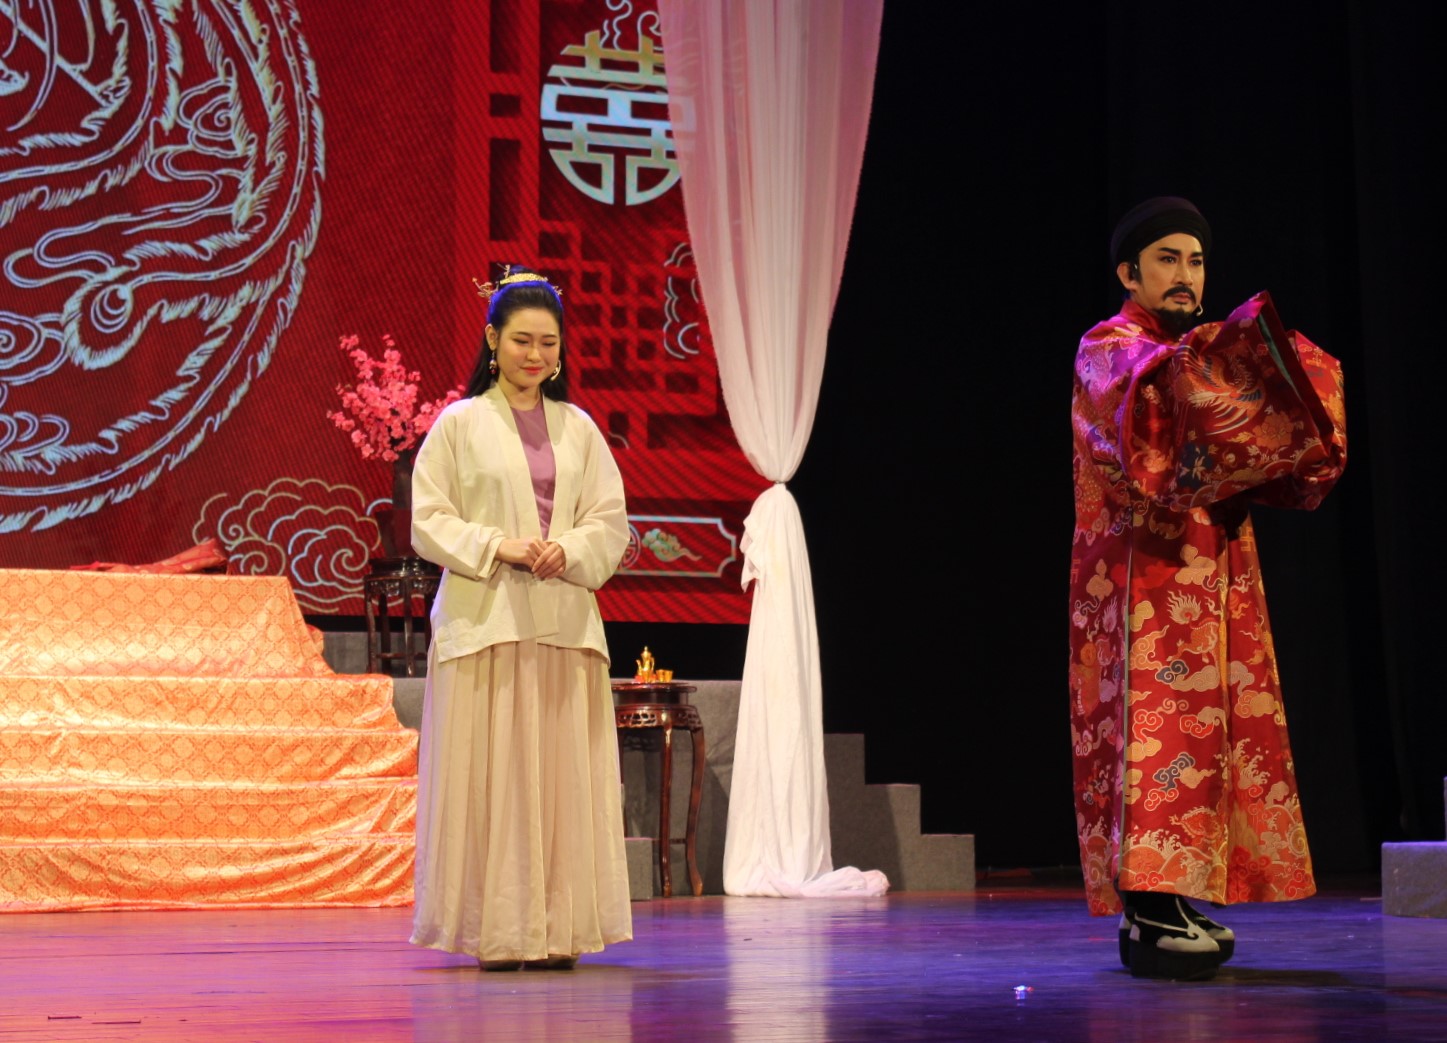 Bắt đầu từ cuộc hôn nhân chính trị, Bắc Bình Vương Nguyễn Huệ và công chúa Ngọc Hân đã trải qua nhiều thử thách để tìm được sự đồng điệu cùng nhau.